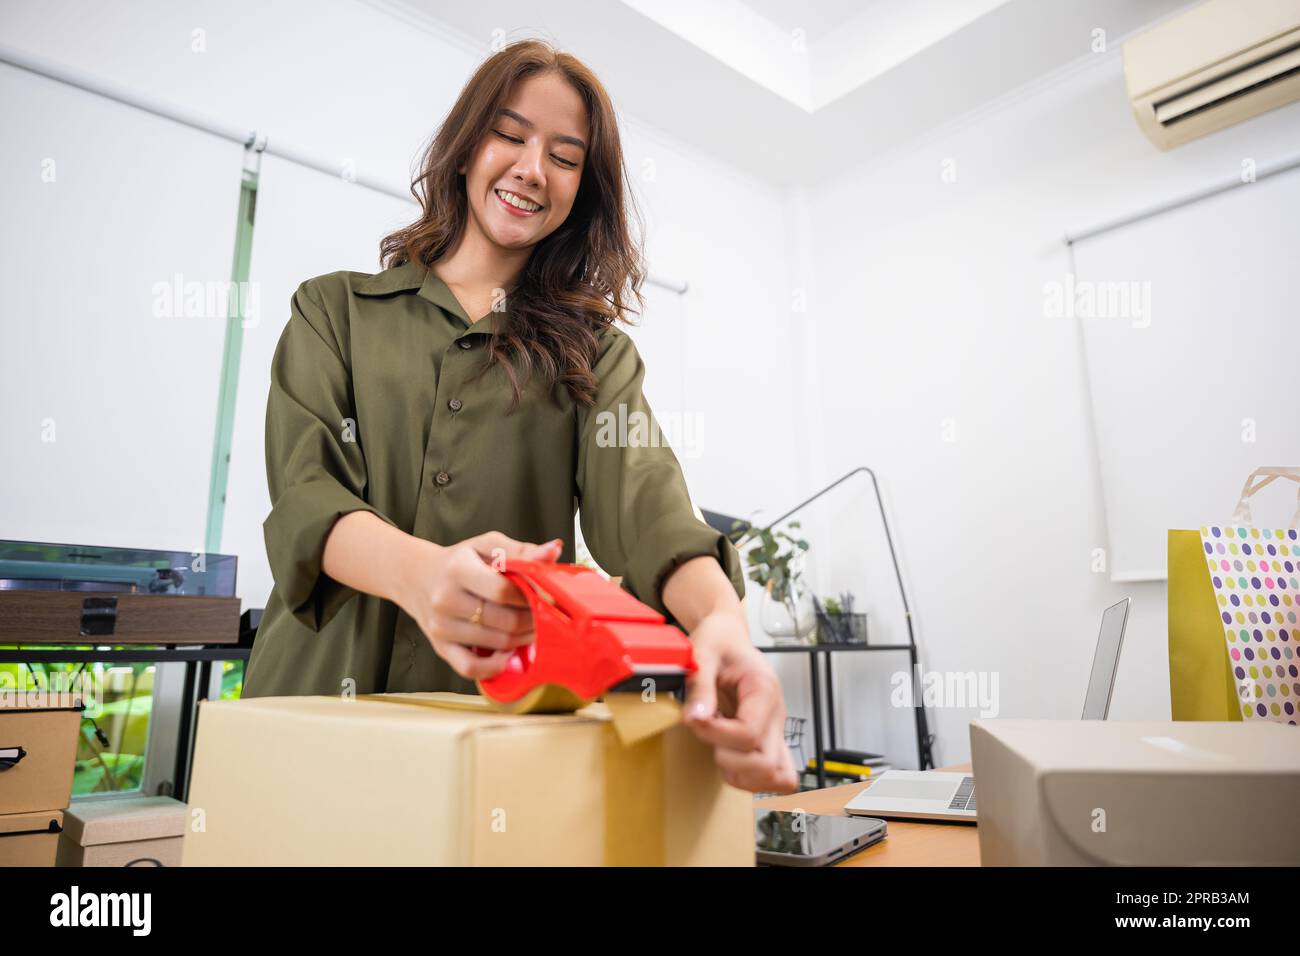 Asiatische junge Frau, die eine Handpackung mit Transparentband im Heimbüro macht Stockfoto